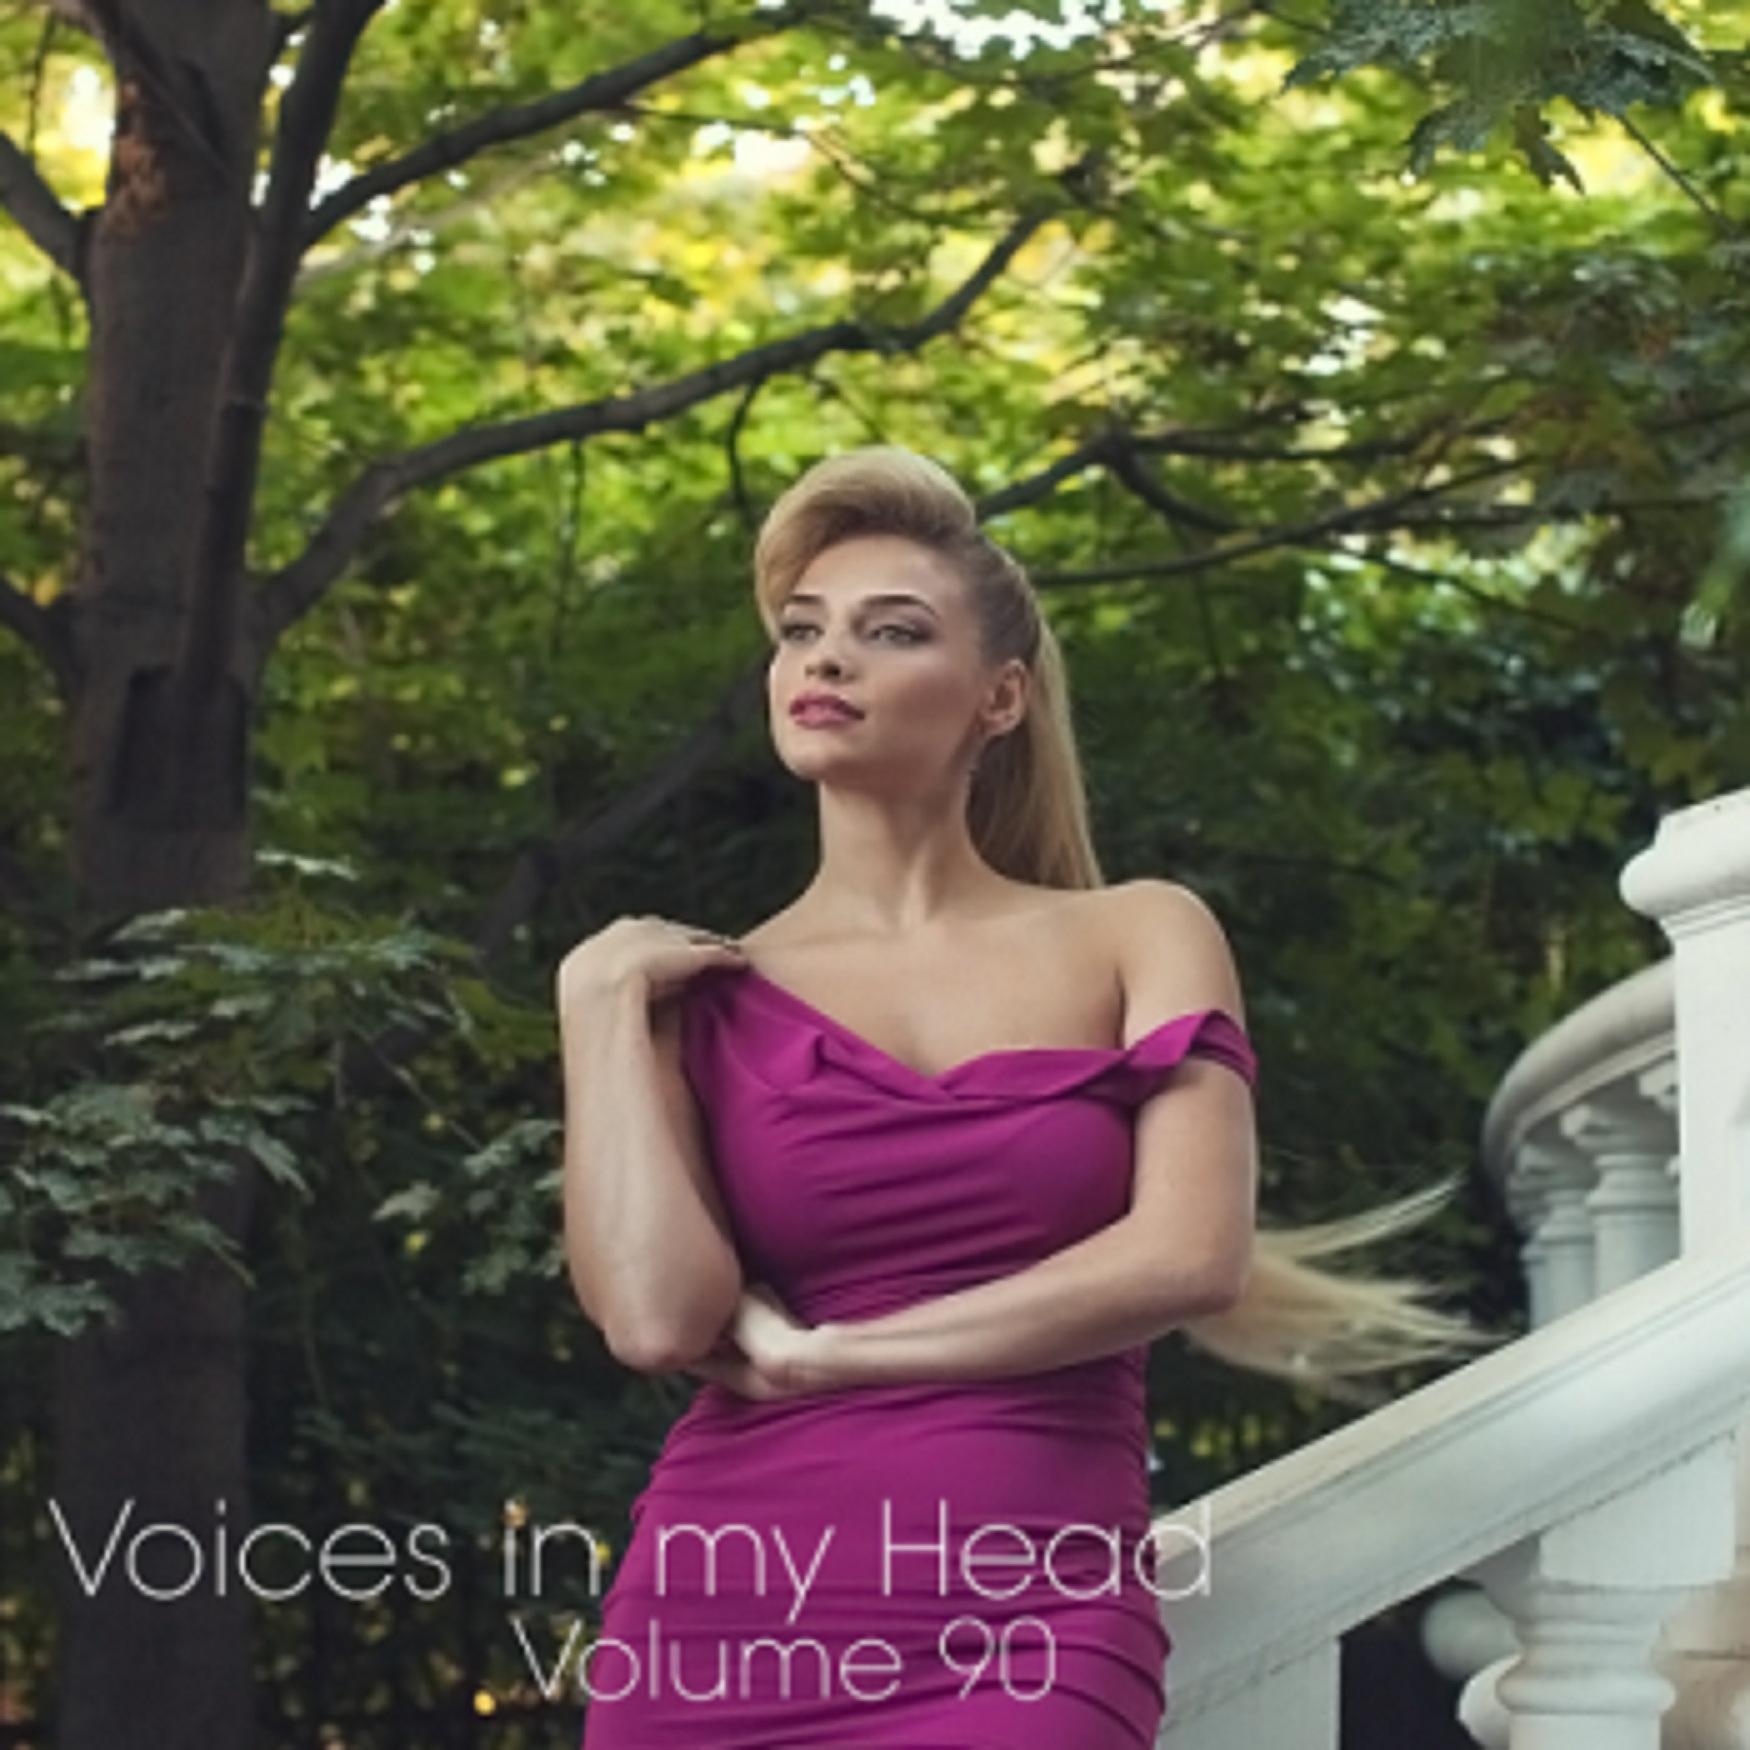 Voices in my Head Volume 90